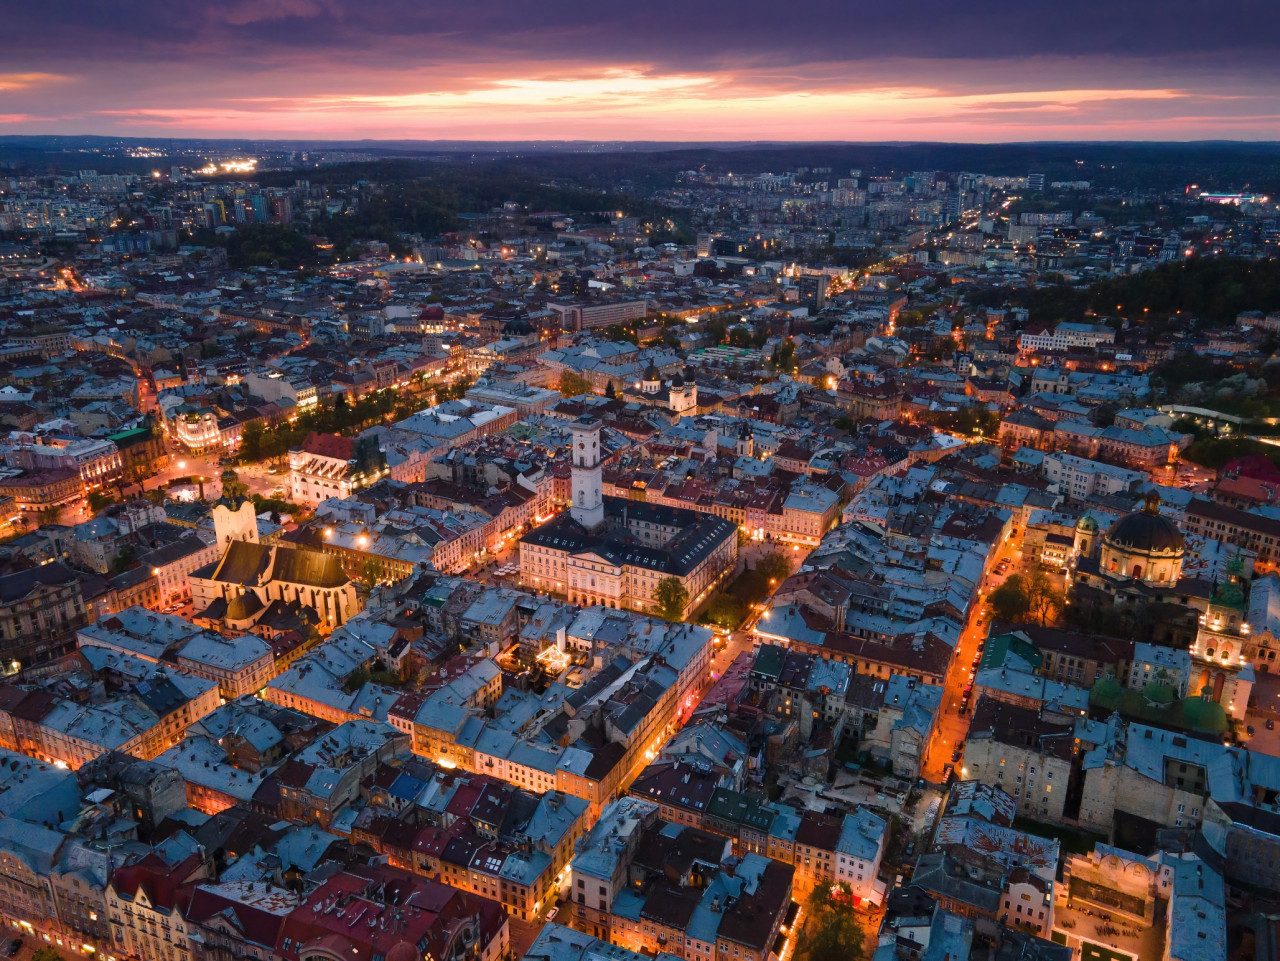 Lviv at night. – Oksana Yermoshenko/ Ukraine Now pic